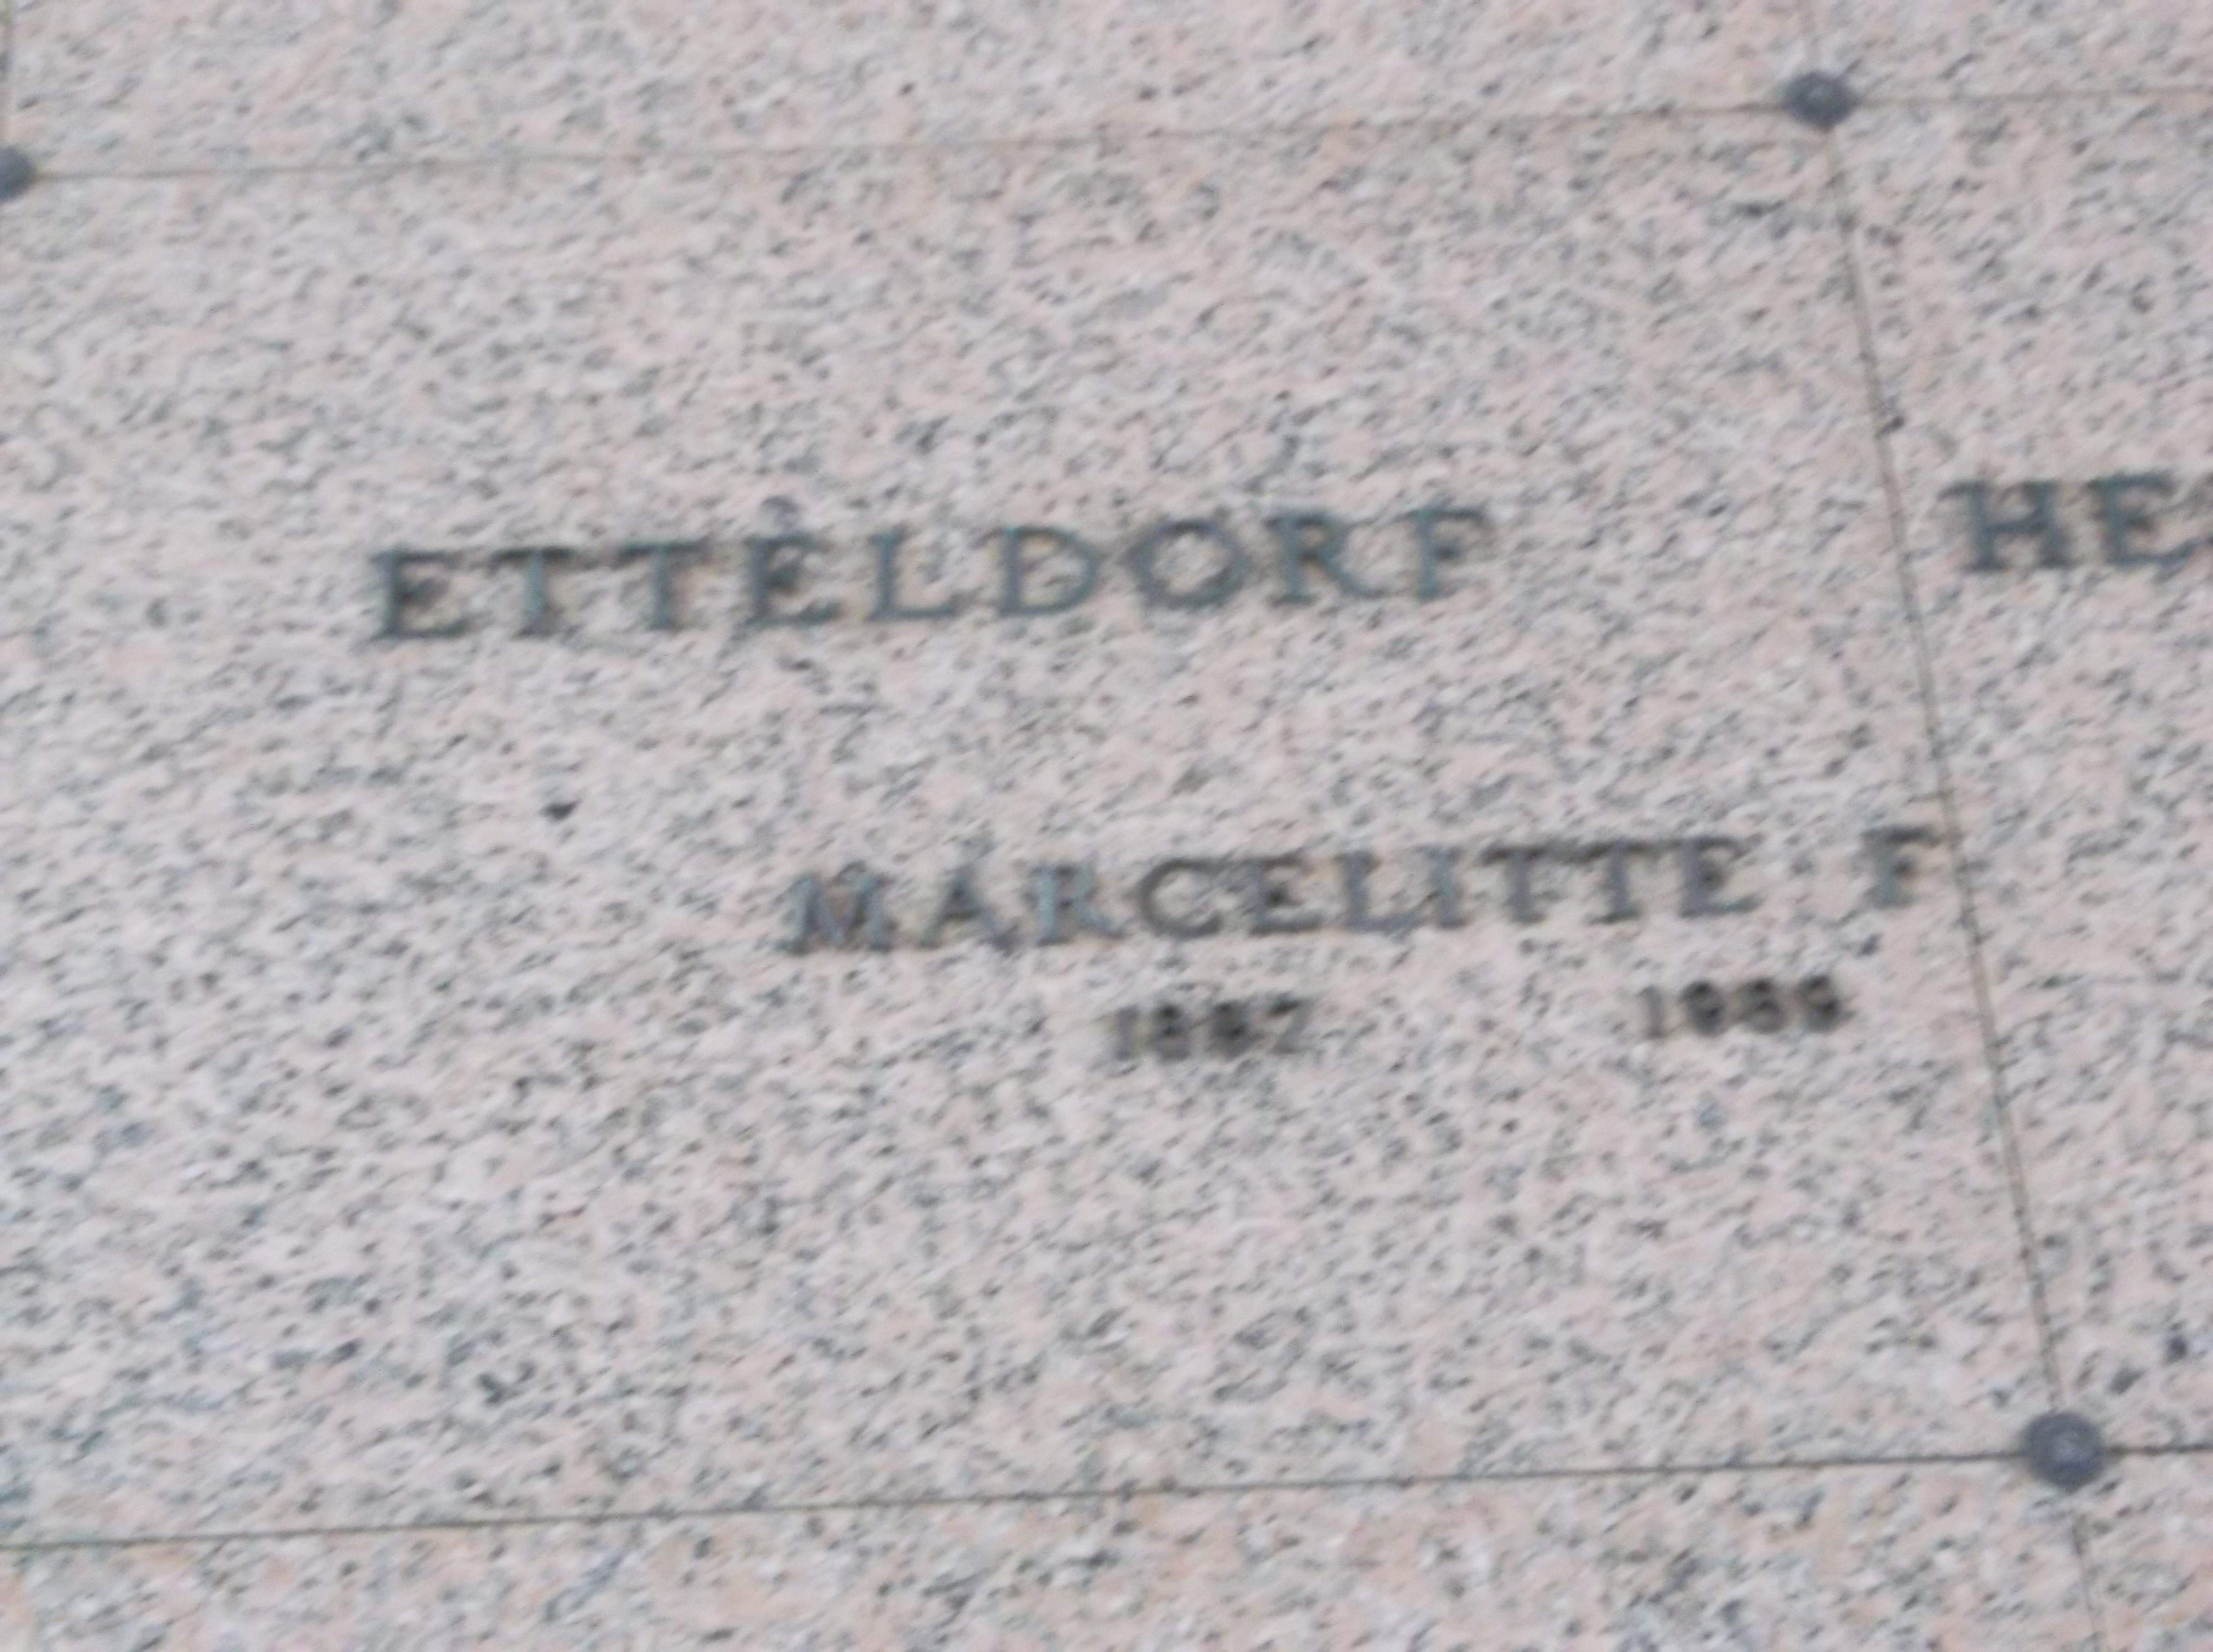 Marcelitte F Etteldorf